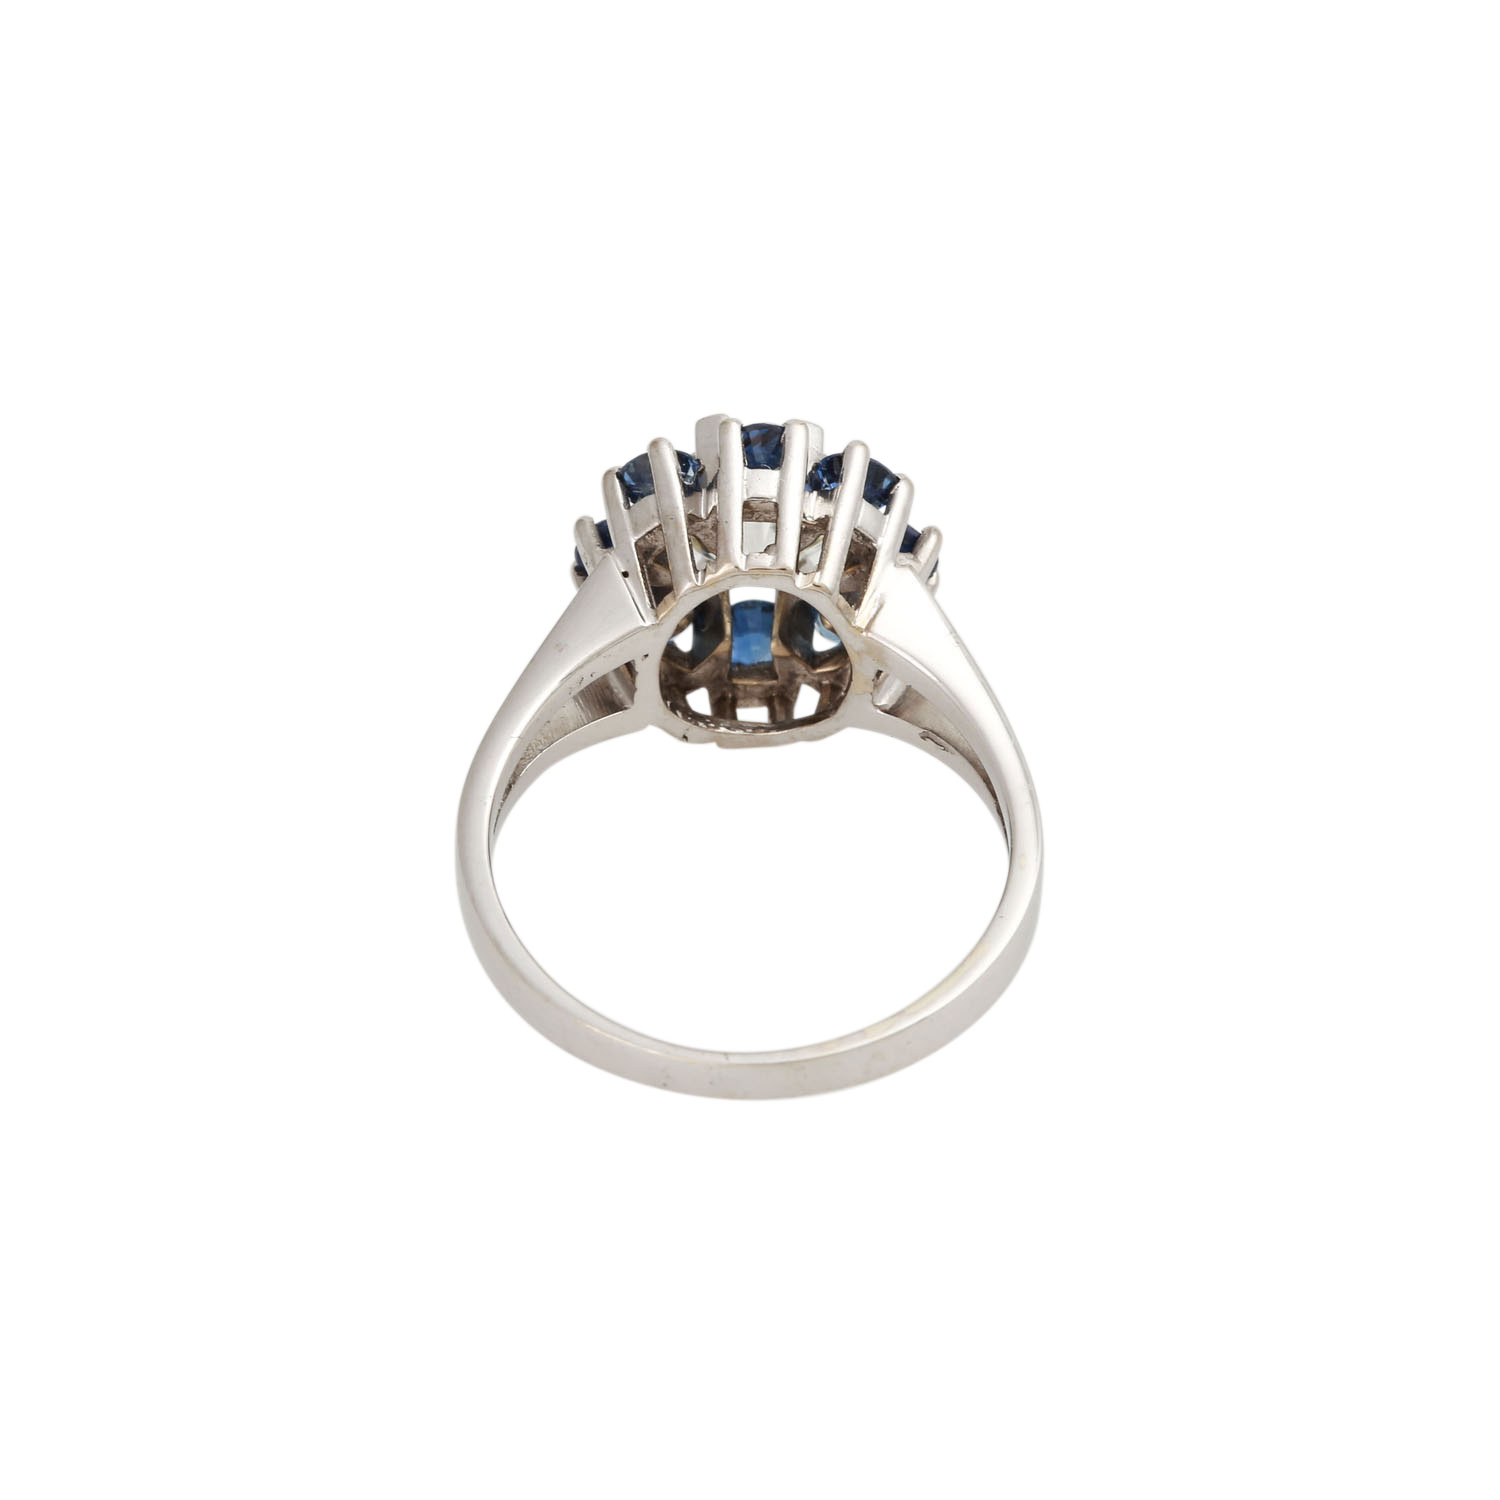 Ring mit Altschliffdiamant ca. 1,4 ct,GW (K)/VS2, Fluoreszenz: keine, Saphire von zus. ca. 0,8 ct, - Image 4 of 5